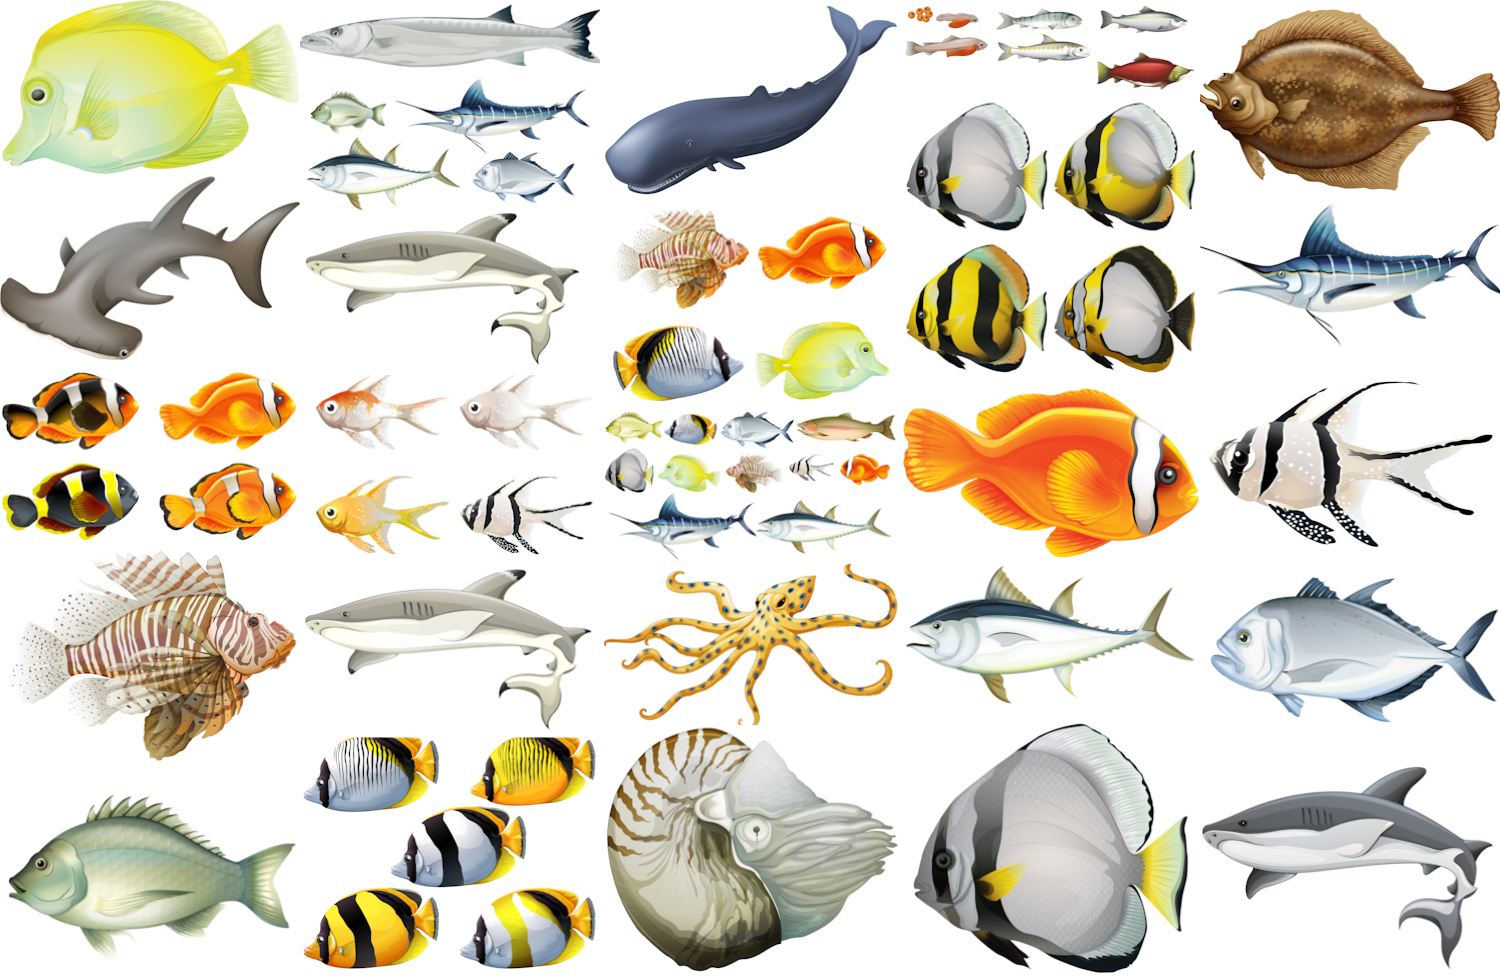 Fish and sea creatures vectors